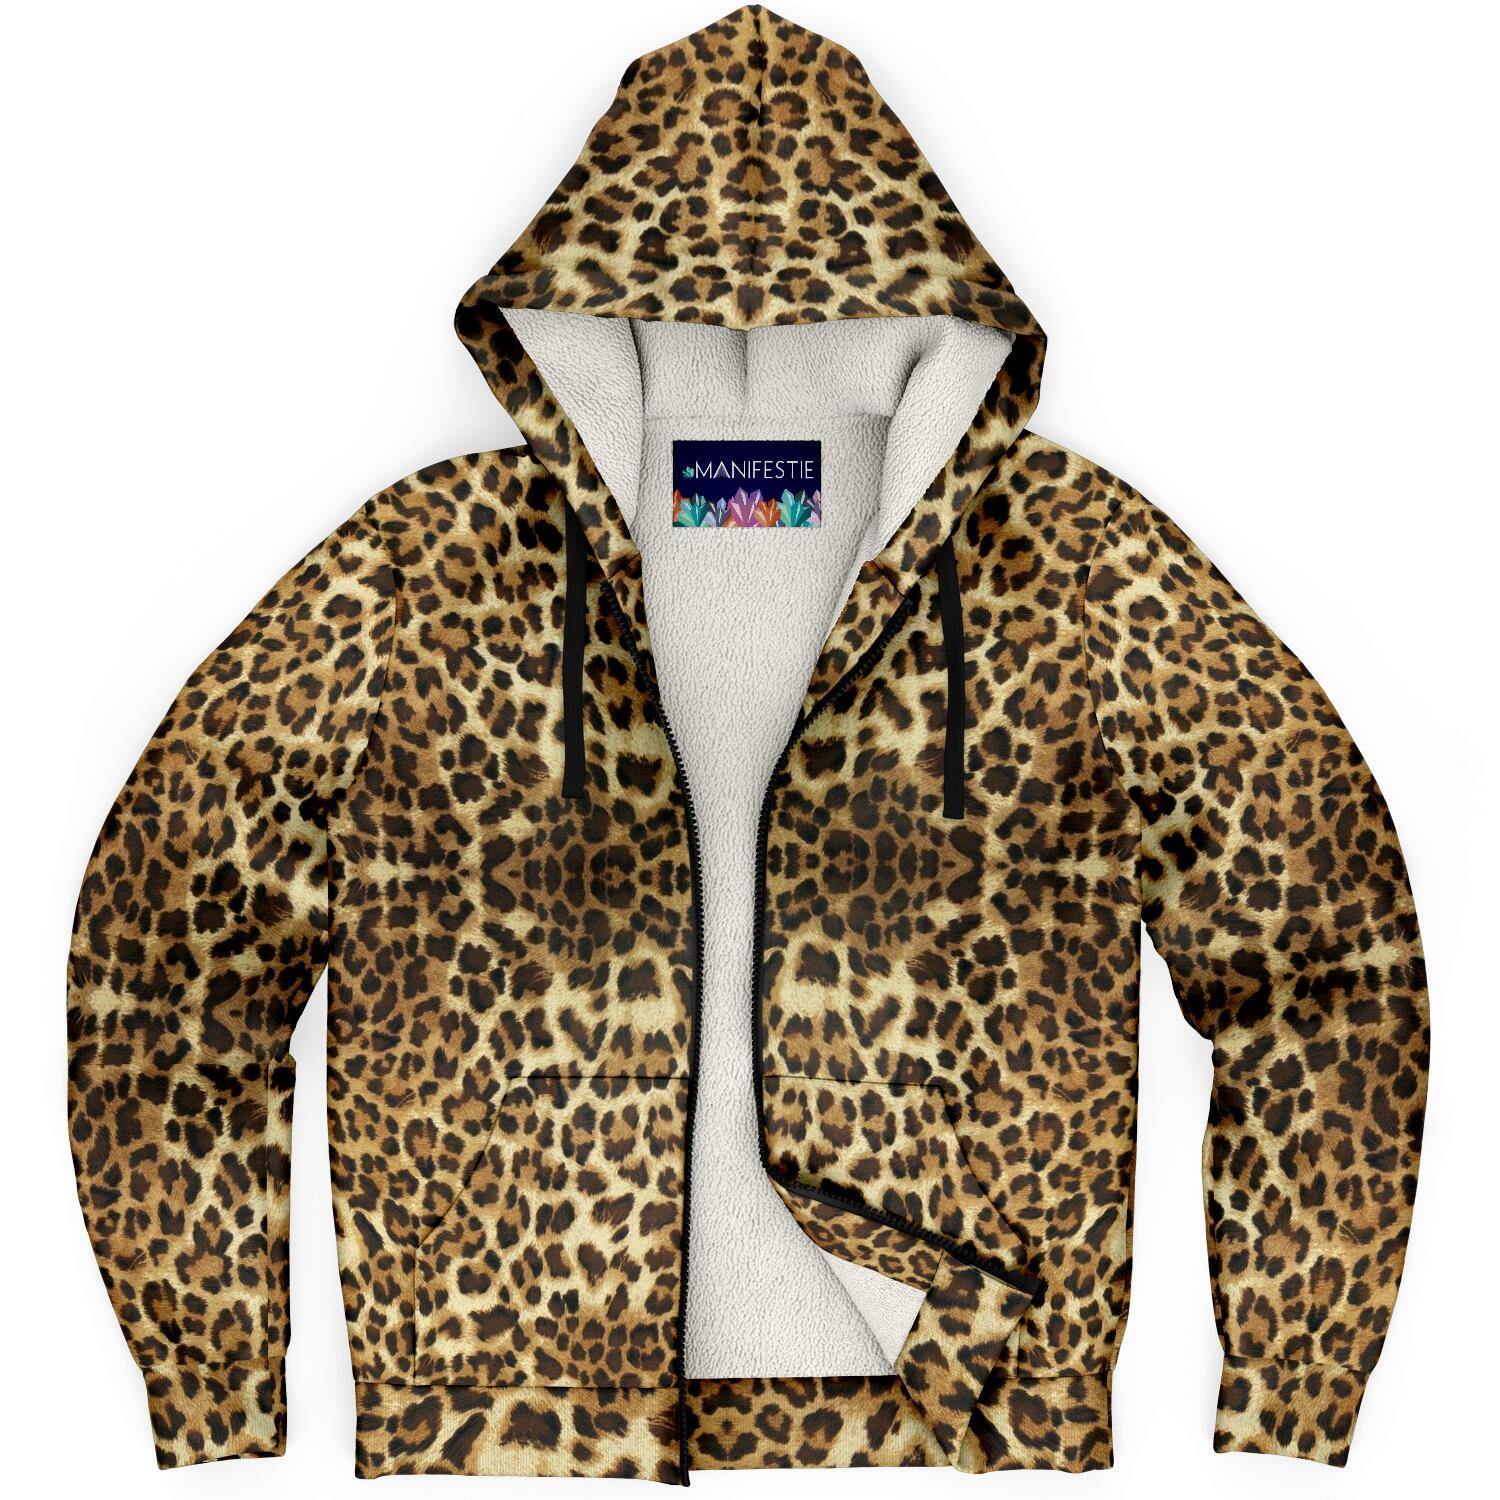 Leopard Print Premium Sherpa Lined Zip Hoodie - Manifestie